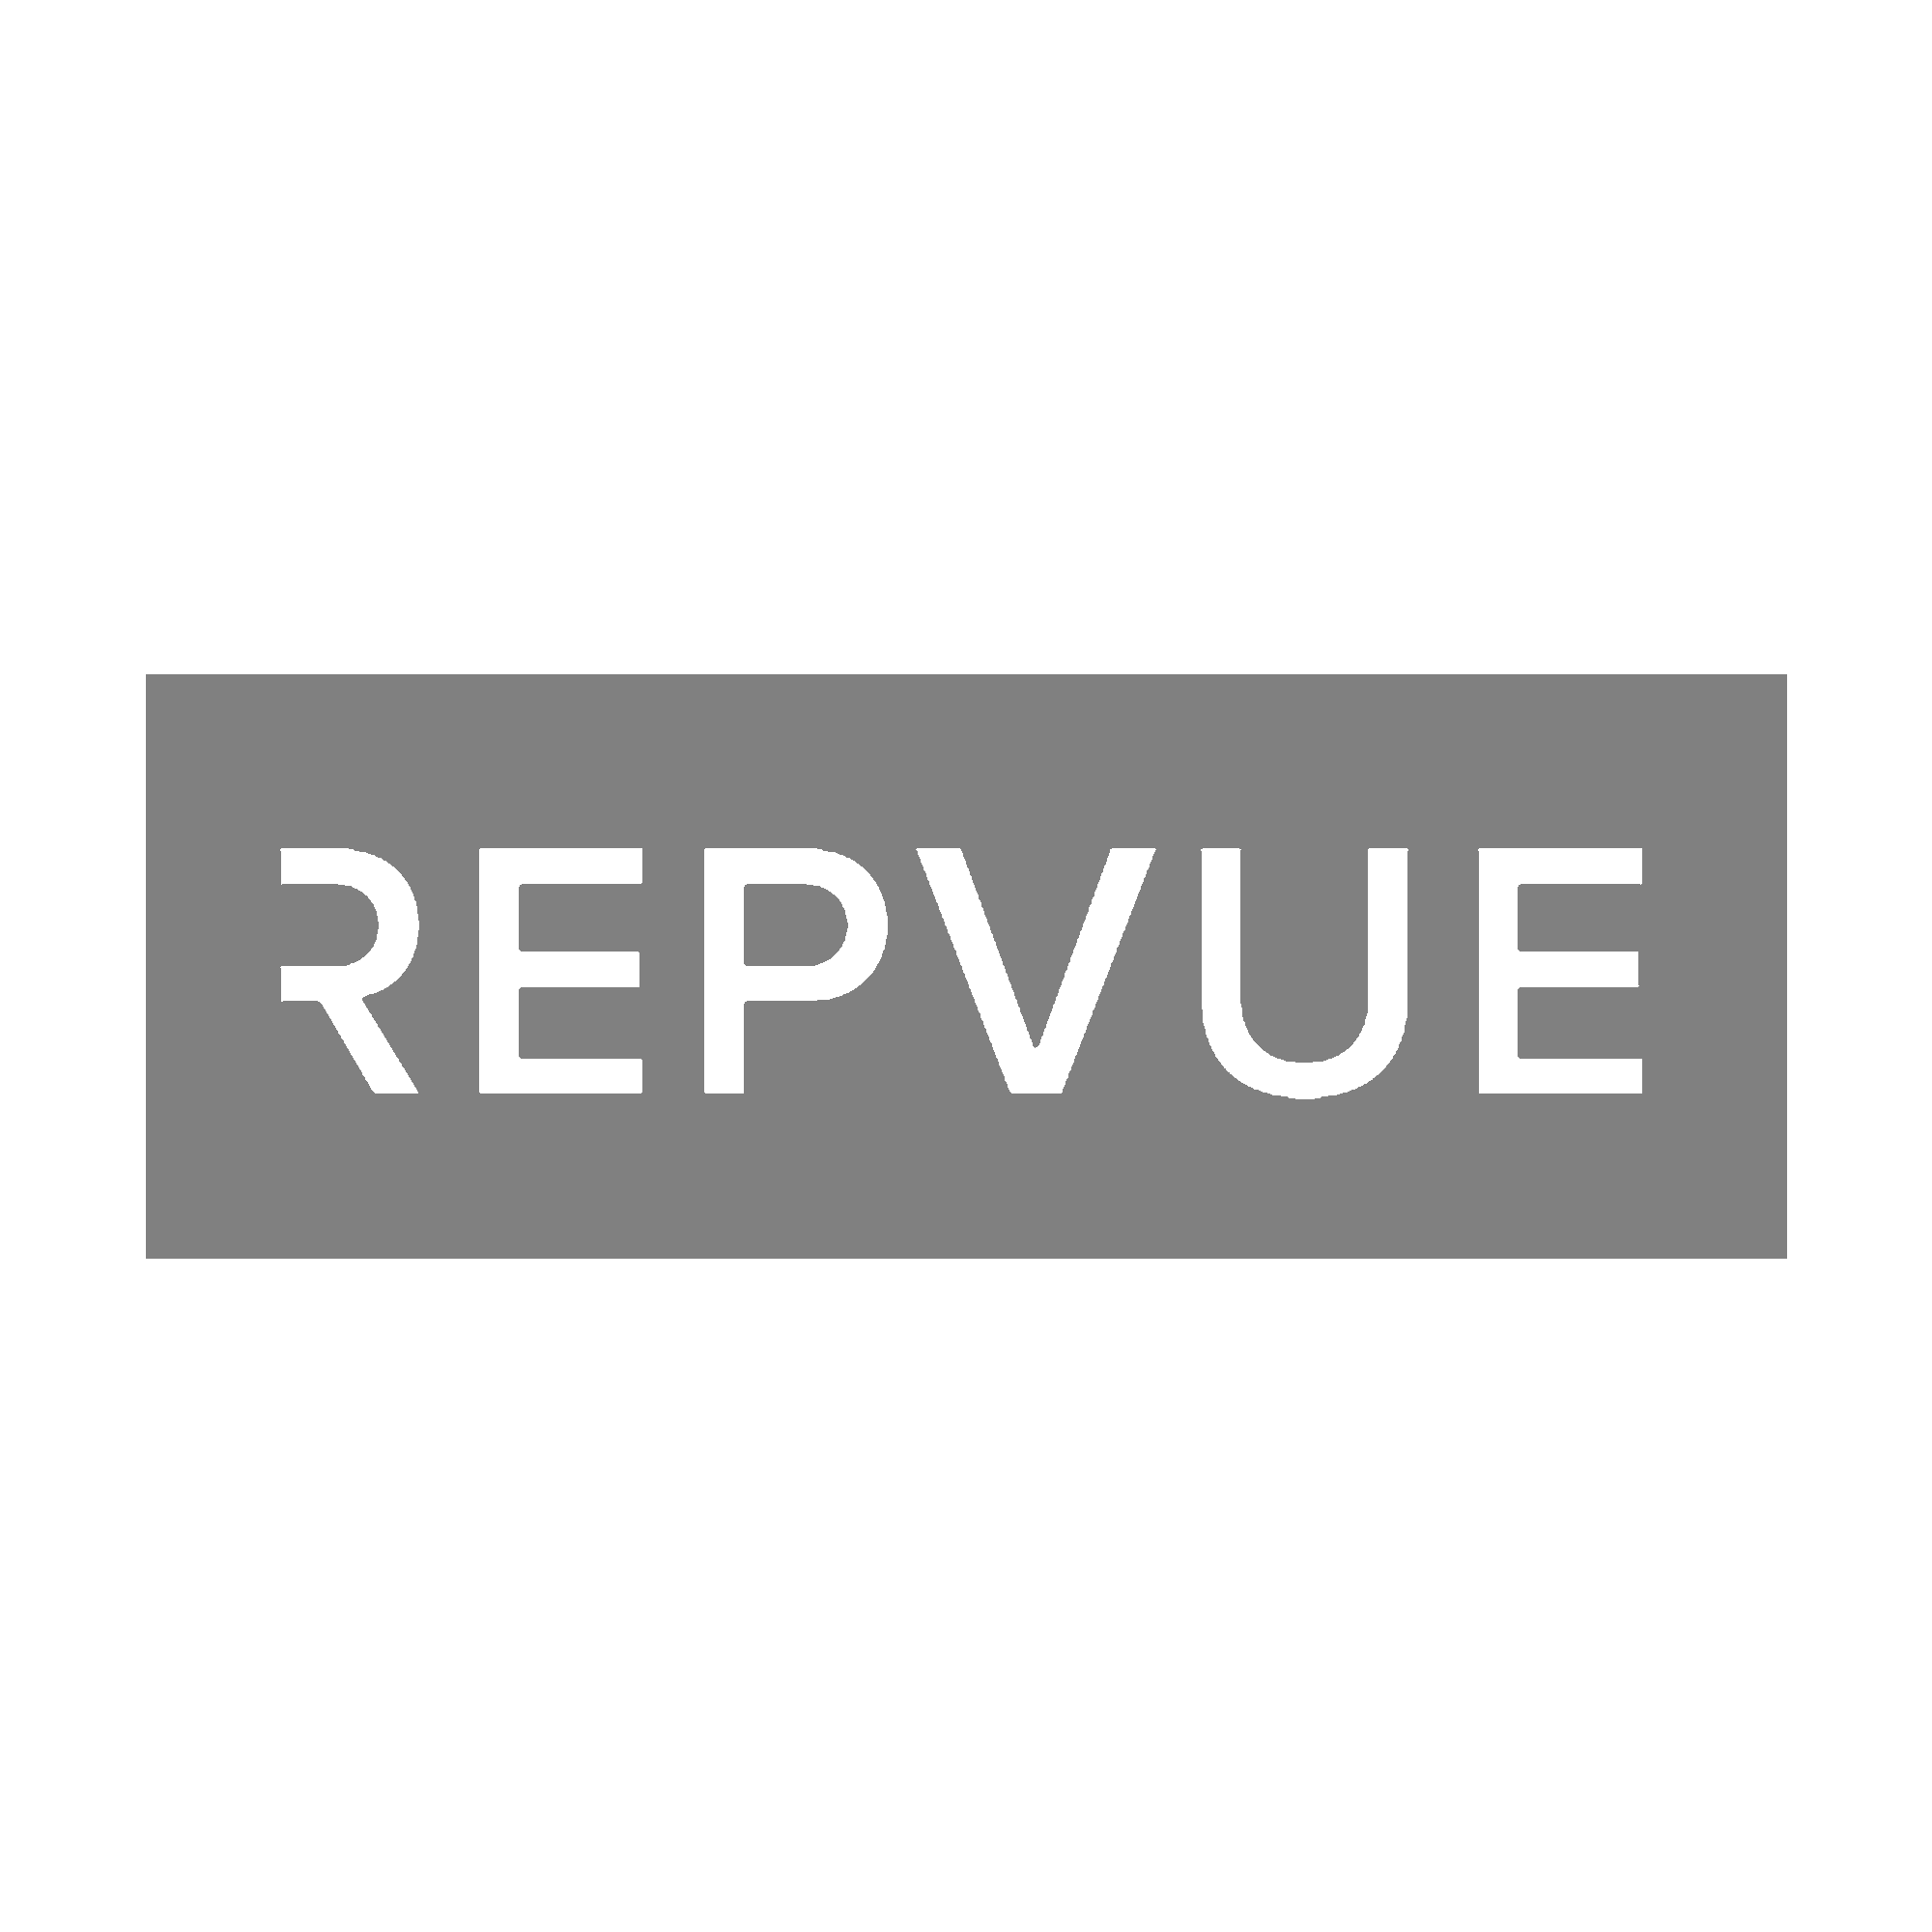 Repvue logo